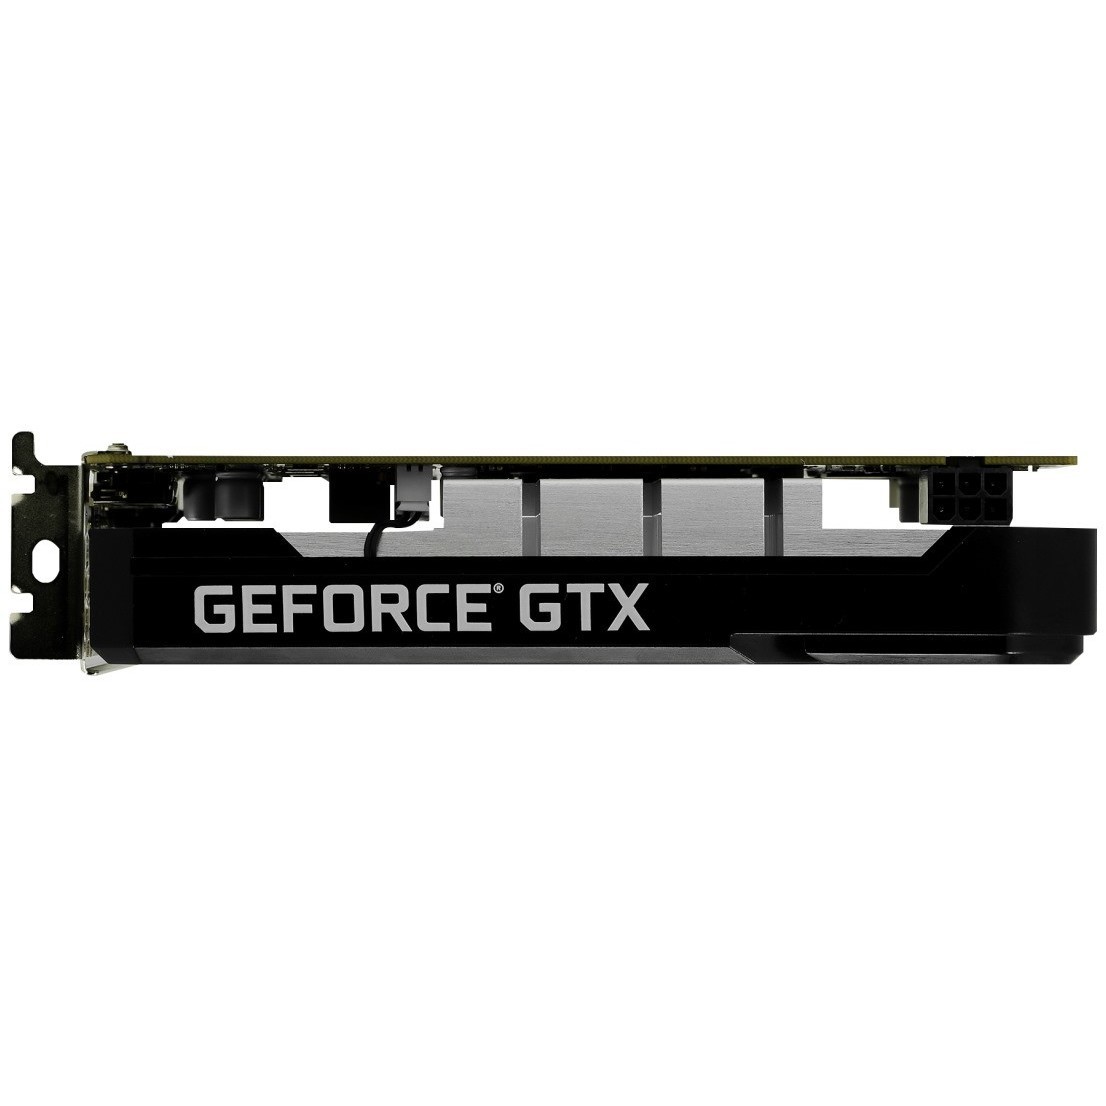 Видеокарта Palit GeForce GTX 1650 StormX OC D6